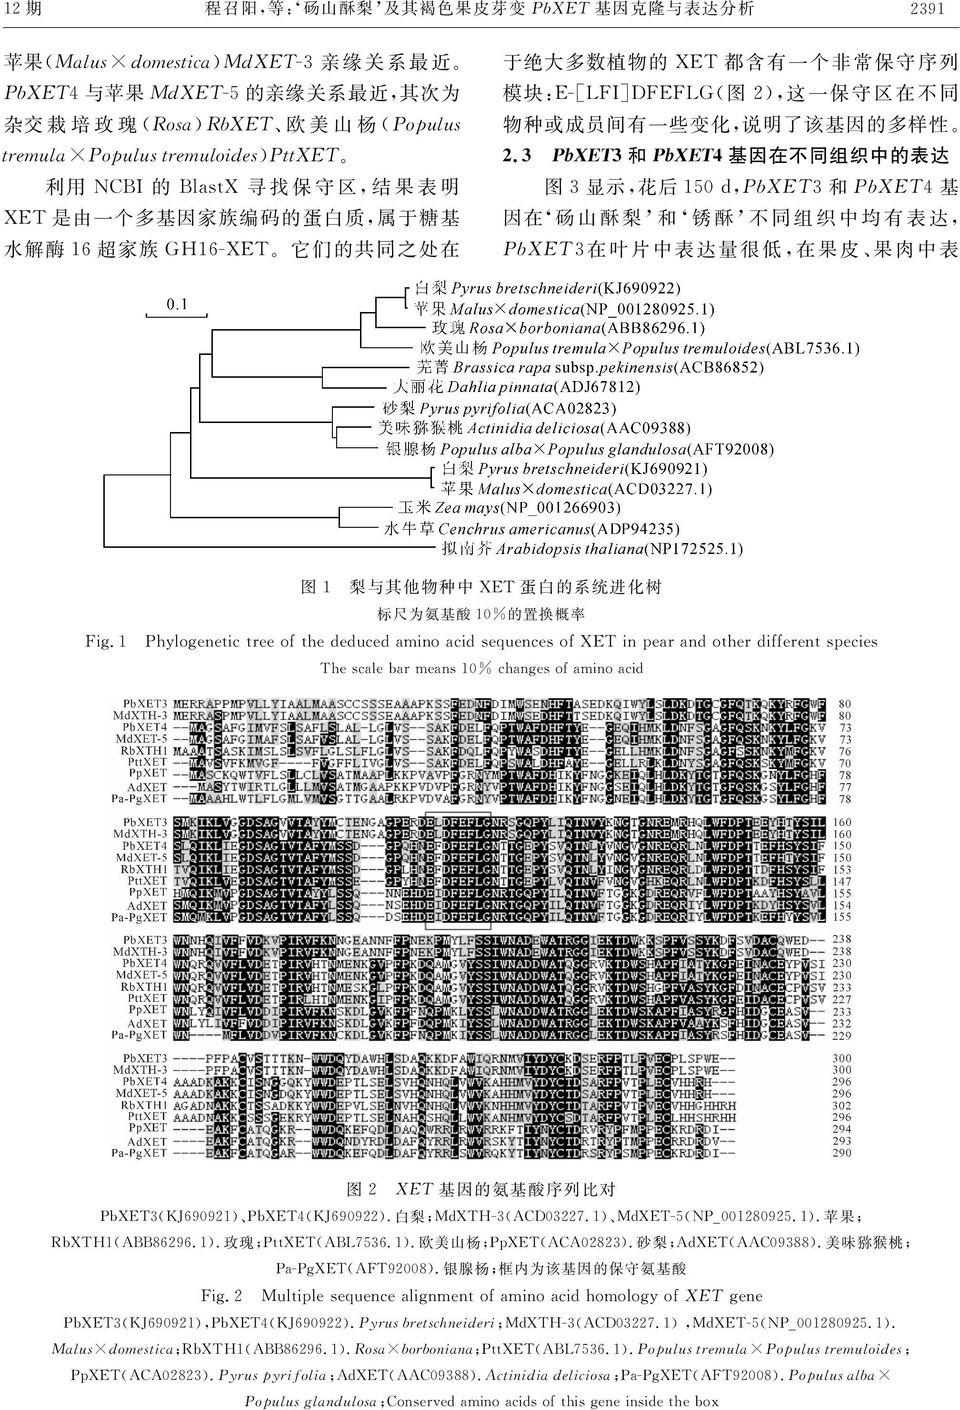 说明了该基因的多样性' B6 D!1345D 和 1345E 基因在不同组织中的表达 图 % 显示!花后 #"C!!"#$%% 和!"#$%$ 基 因在(砀 山 酥 梨 )和 (锈 酥 )不 同 组 织 中 均 有 表 达!!"#$%%在 叶 片 中 表 达 量 很 低!在 果 皮 果 肉 中 表 图 #! 梨与其他物种中 [6X 蛋白的系统进化树 标尺为氨基酸 #"c 的置换概率 \ #!